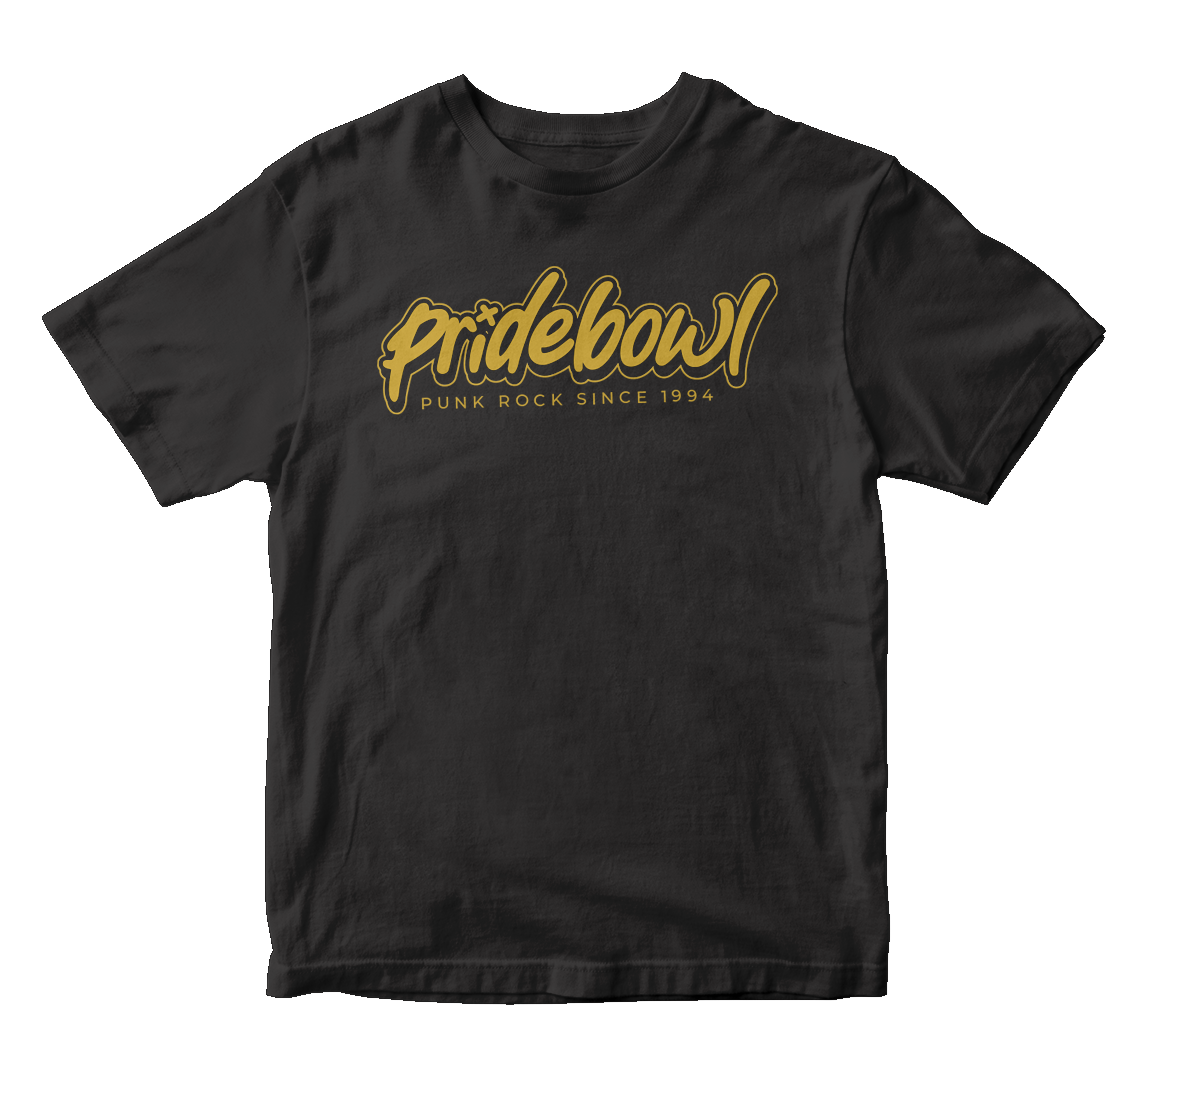 PRIDEBOWL - "Hostage" (Black) (Youth T-Shirt)